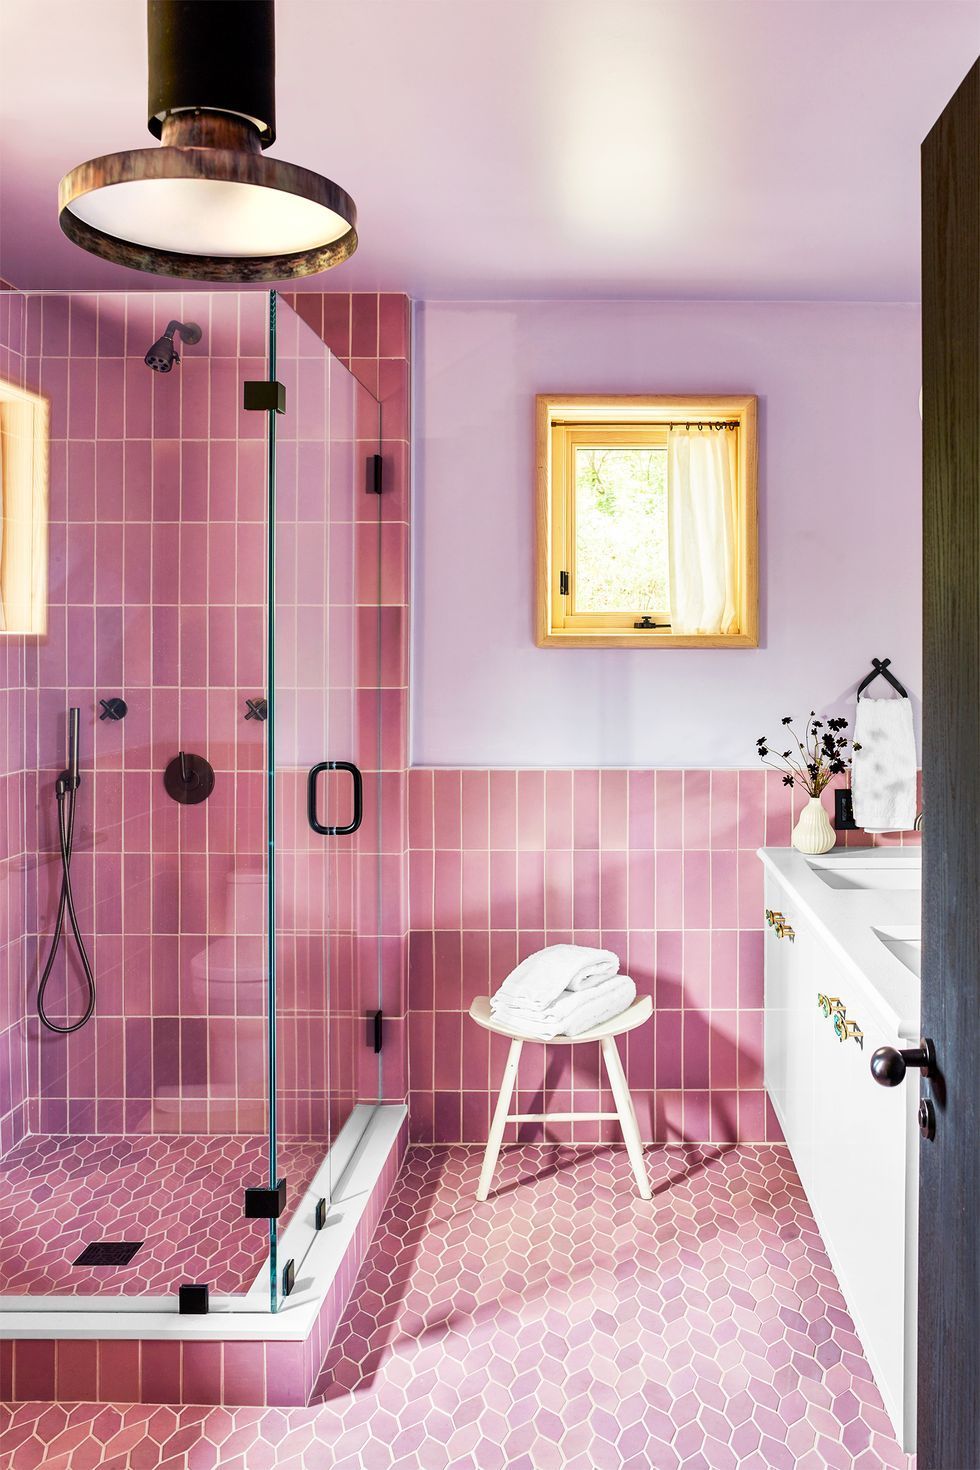 hình ảnh phòng tắm nhỏ ốp gạch màu hồng tím